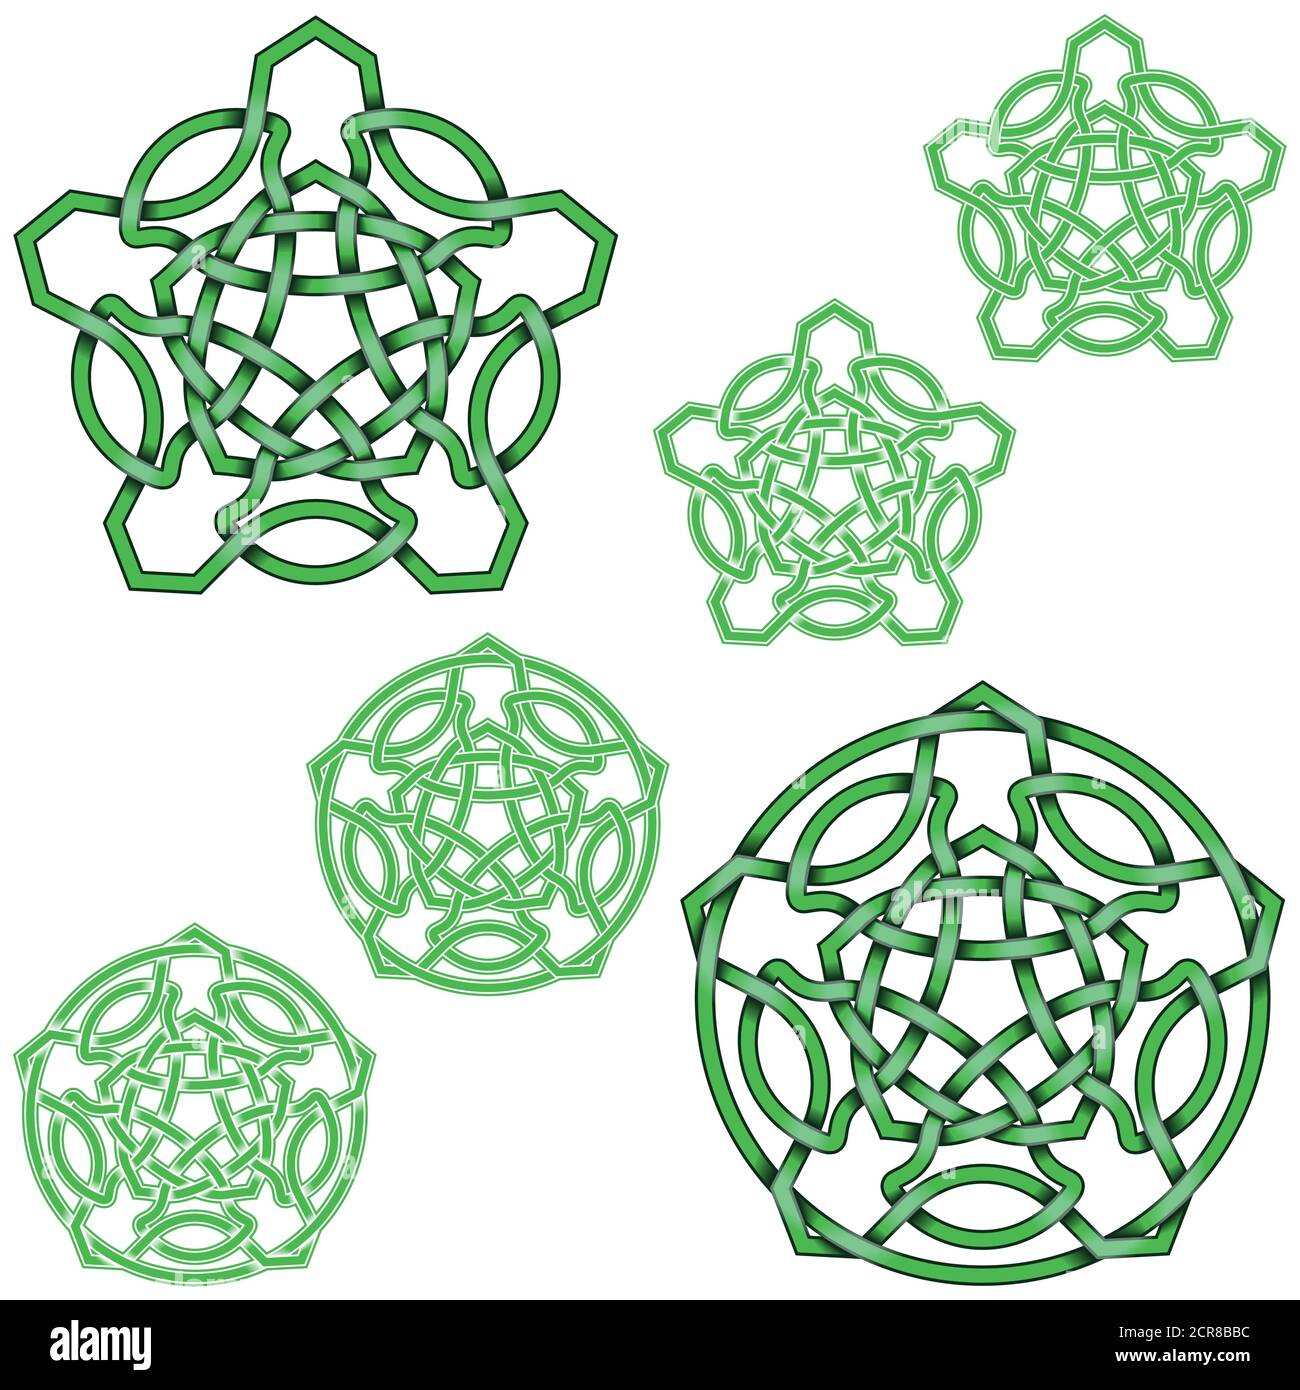 Illustrazione vettoriale di stelle a cinque punte in stile celtico con cerchio, facile da modificare e cambiare colore, il tutto su sfondo bianco. Illustrazione Vettoriale